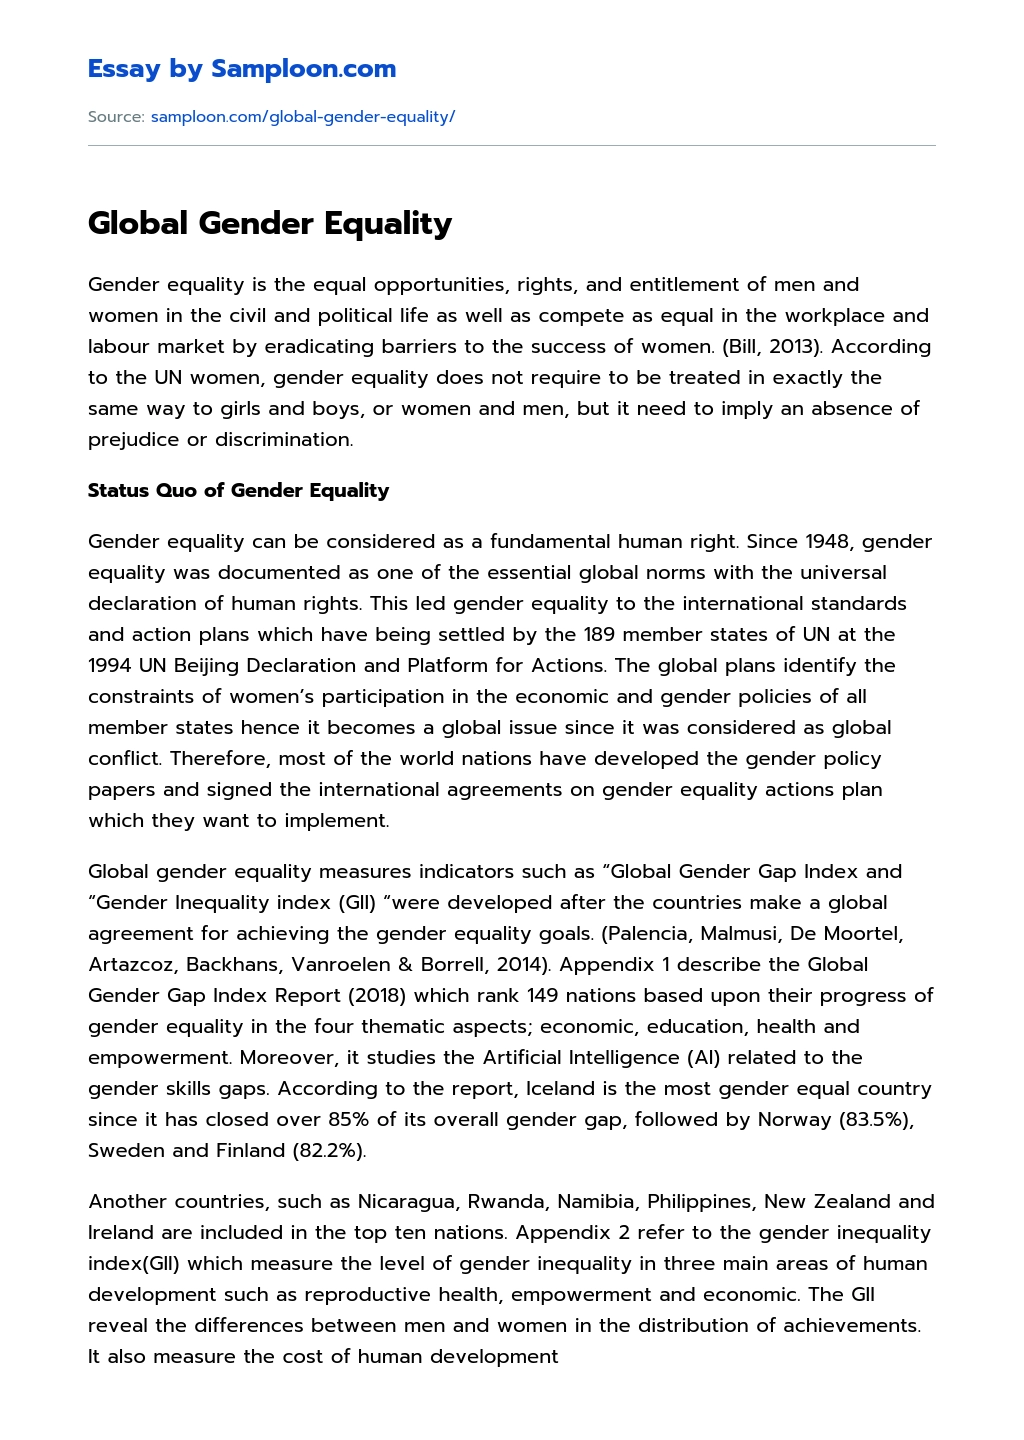 Global Gender Equality essay